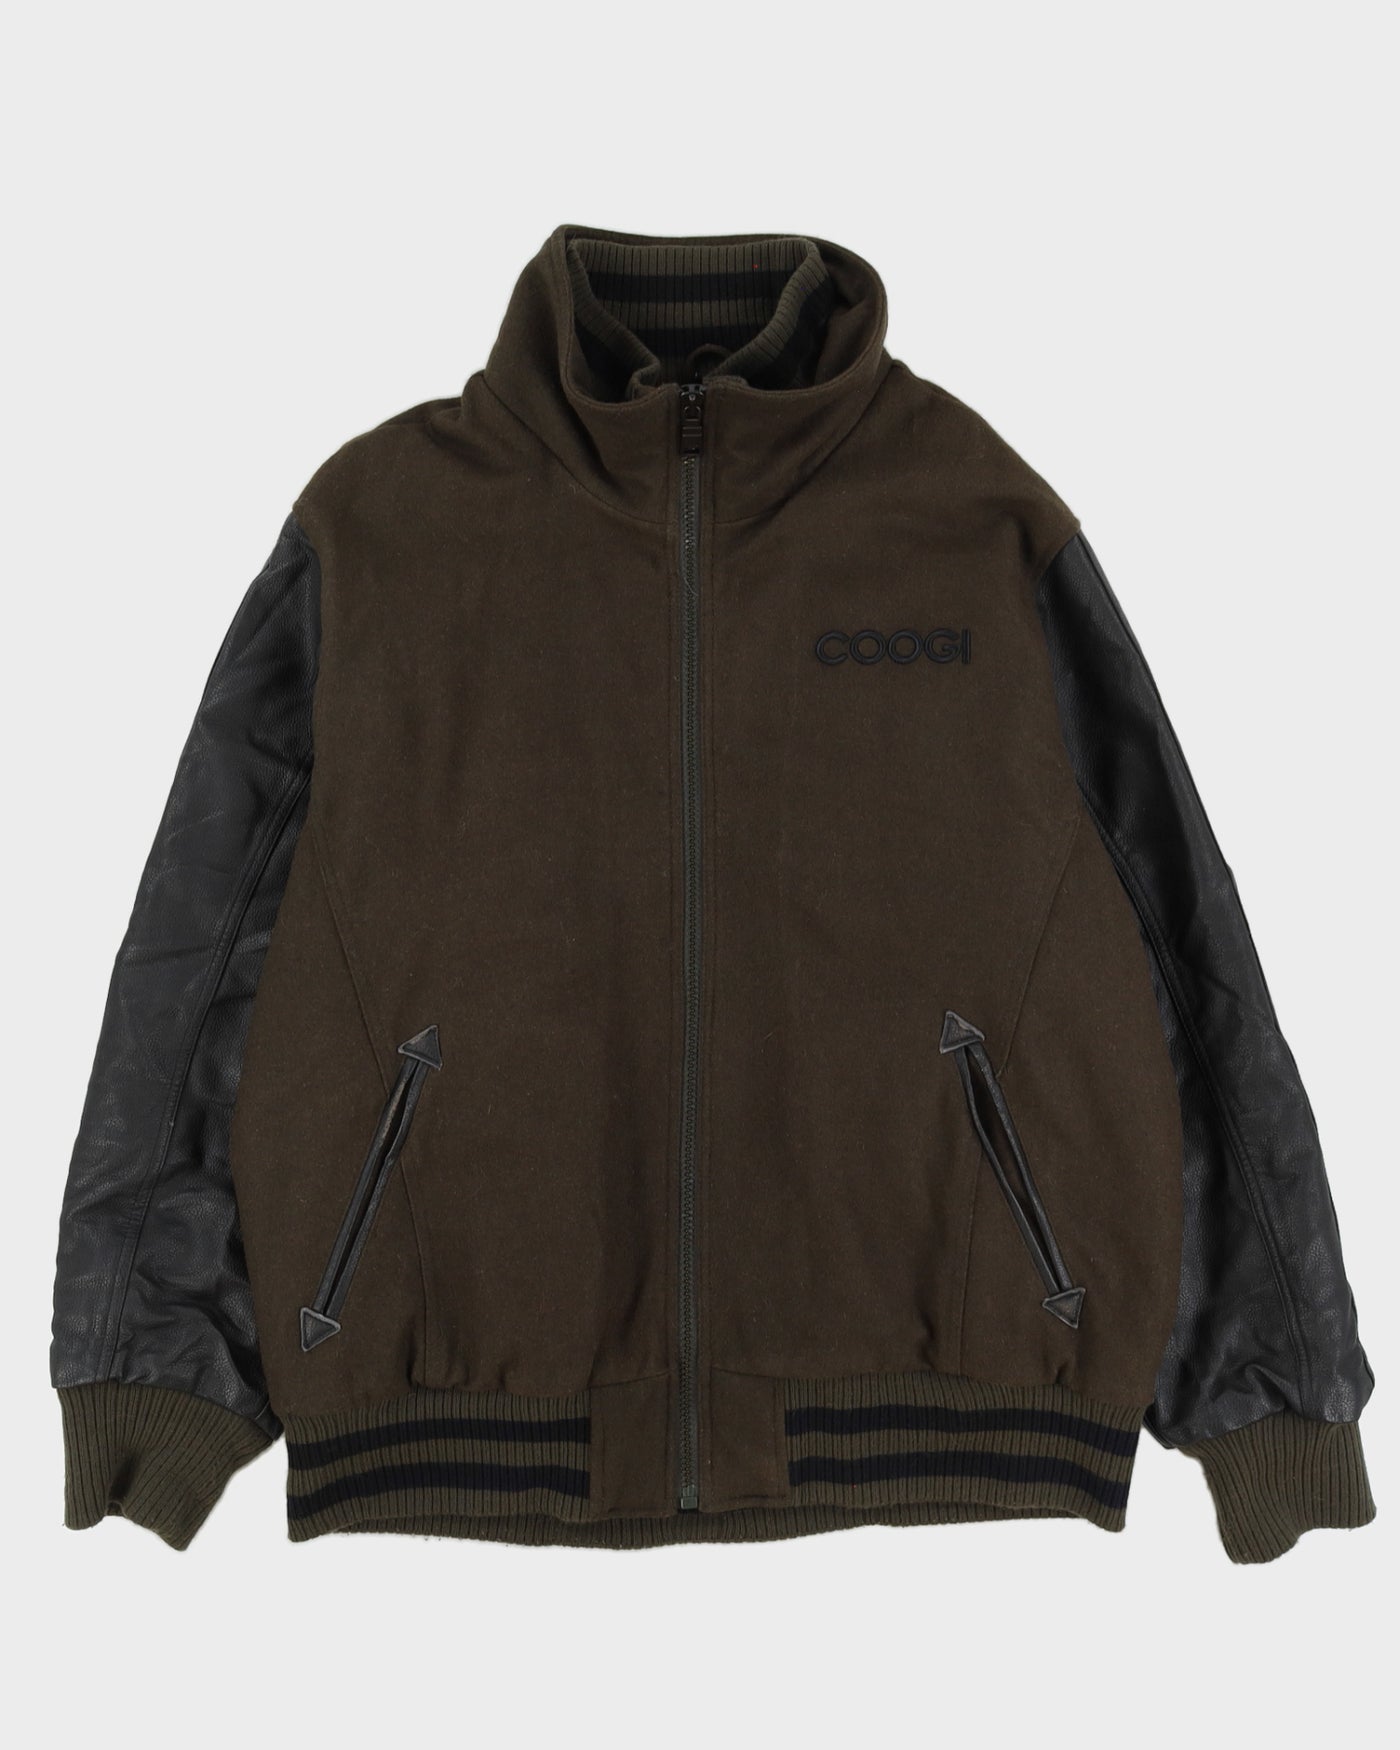 Coogi Green Varsity Jacket - XXL